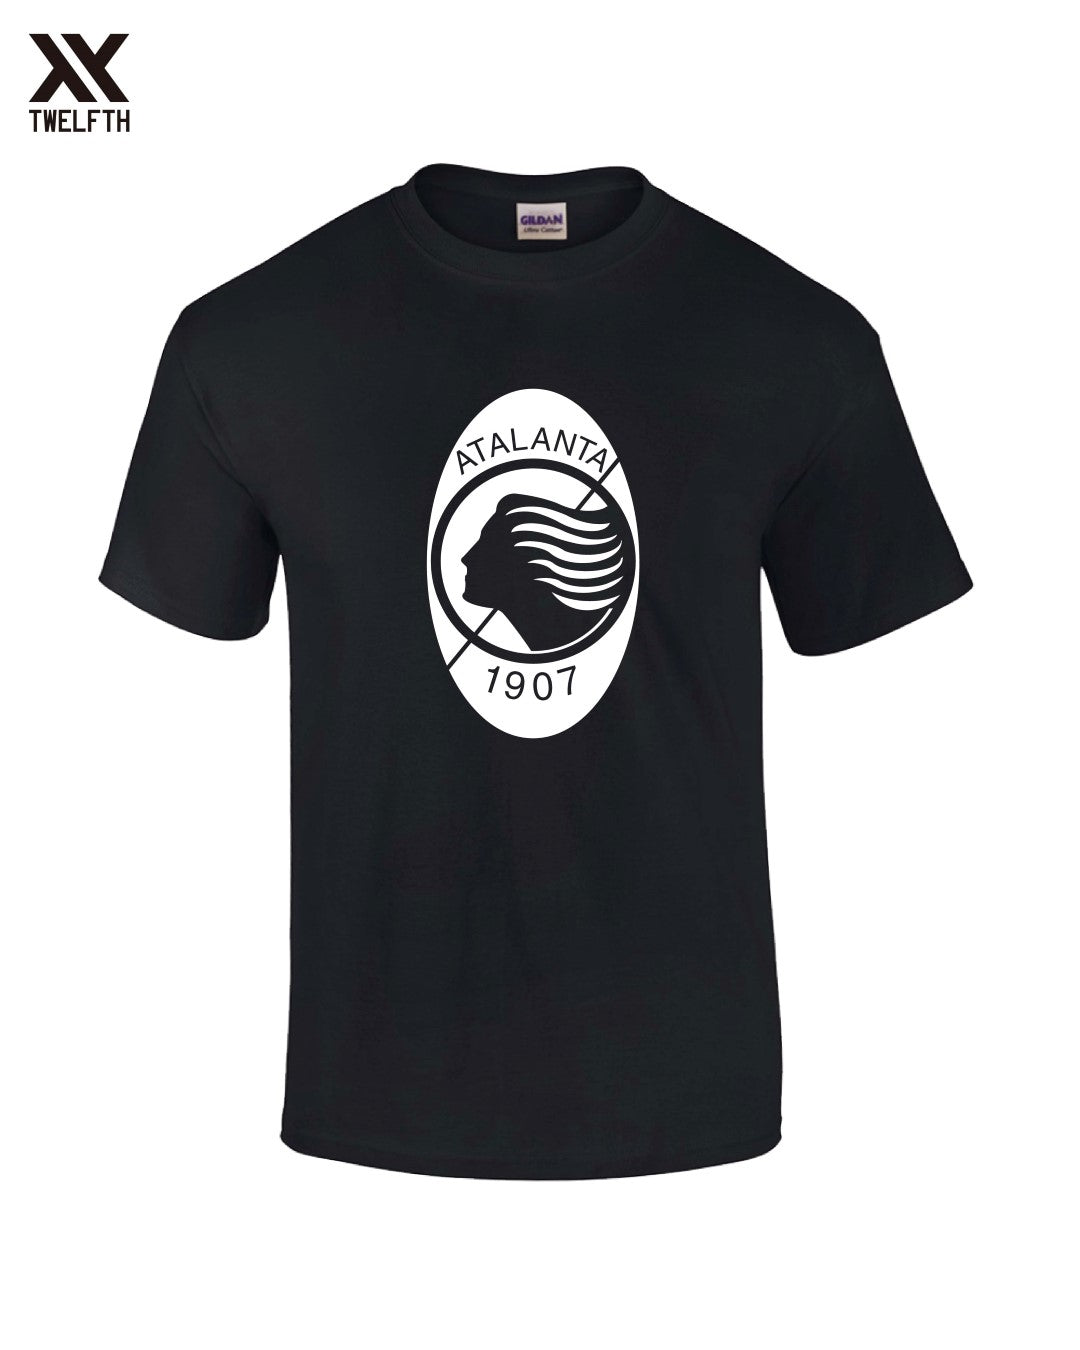 Atalanta Crest T-Shirt - Mens